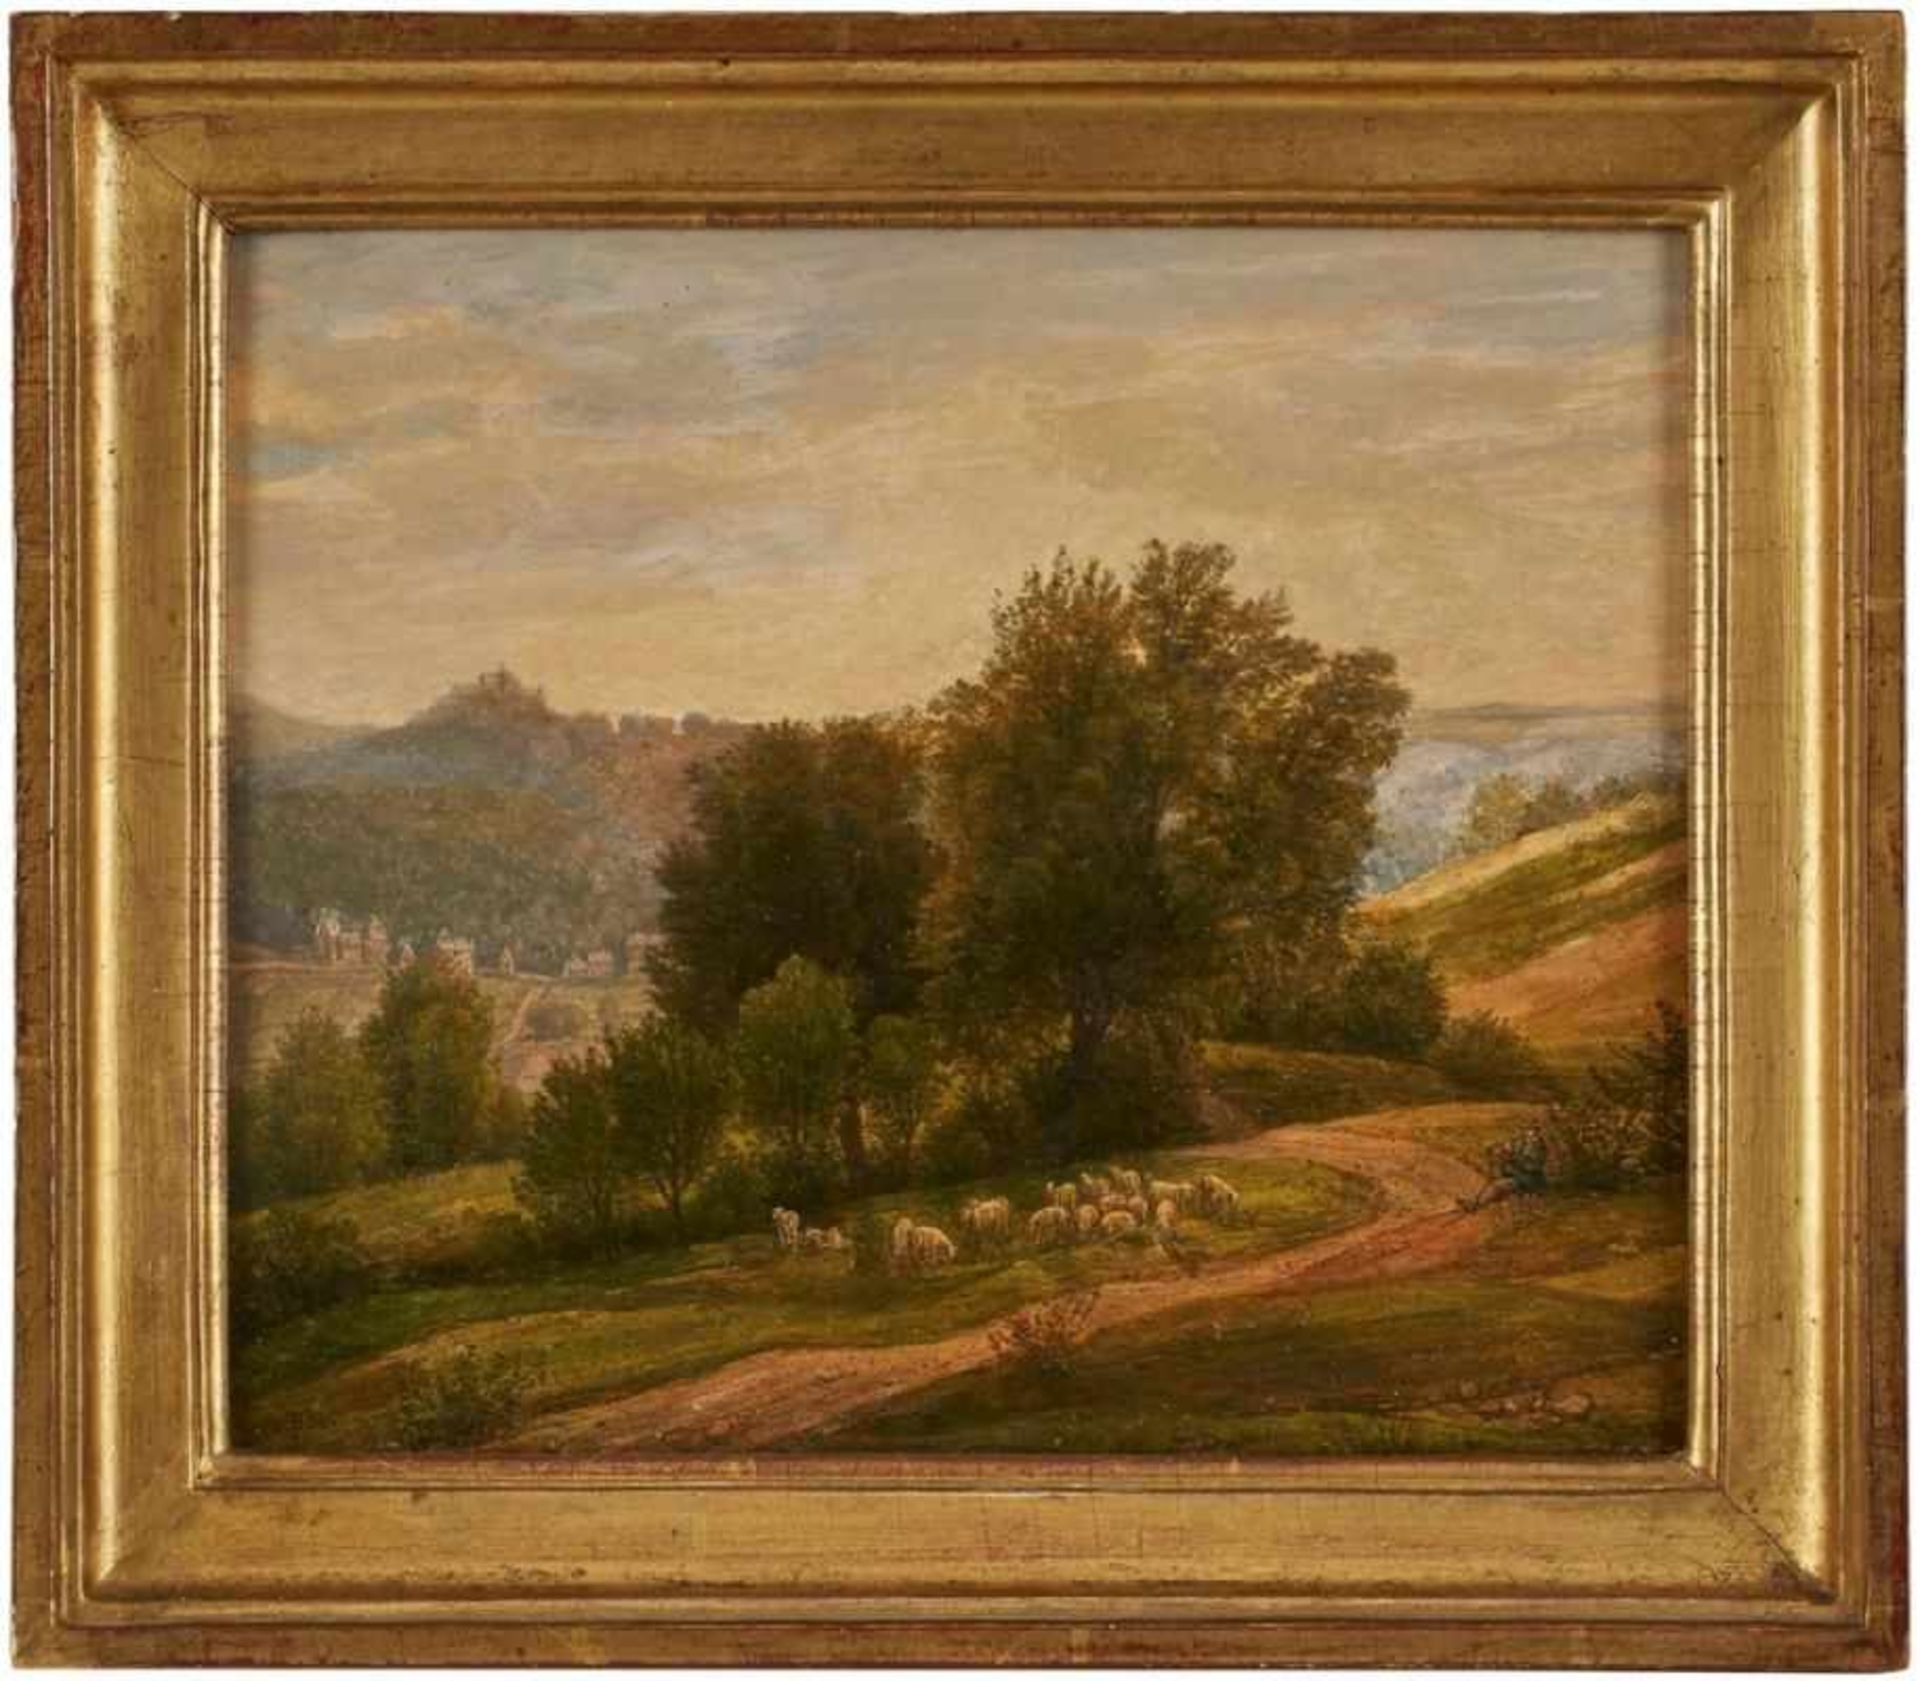 Gemälde Peter Becker 1828 Frankfurt - 1904 Soest Frankfurter Landschaftsmaler. Studierte am Städel